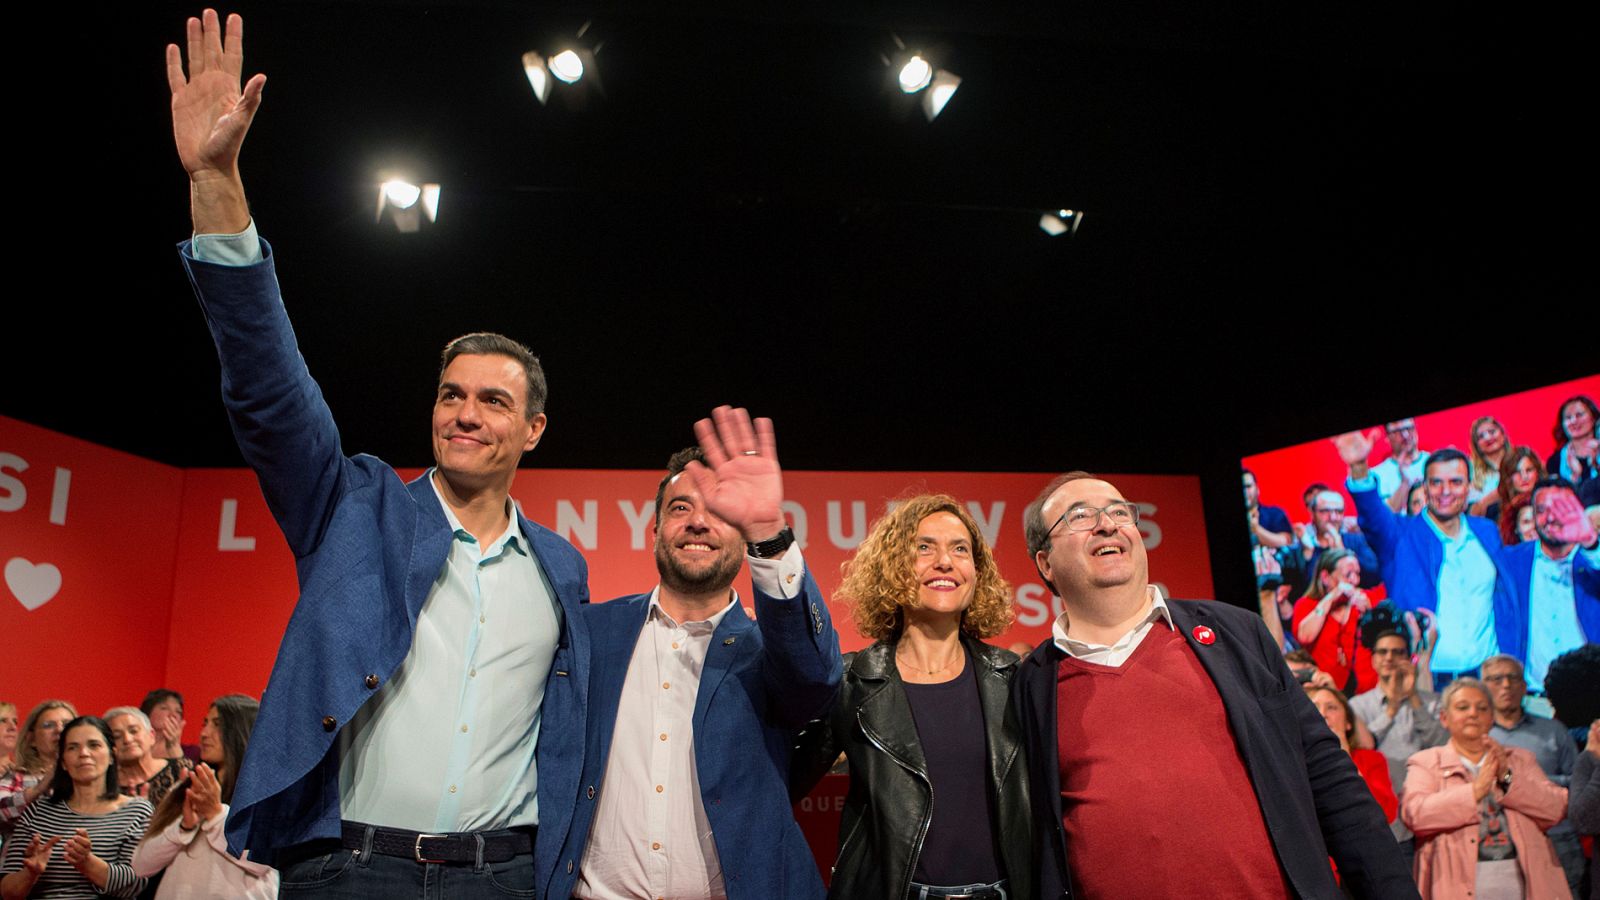 Elecciones generales 2019: Sánchez recupera el 'no es no' contra Cataluña: "Nunca habrá independencia" - RTVE.es